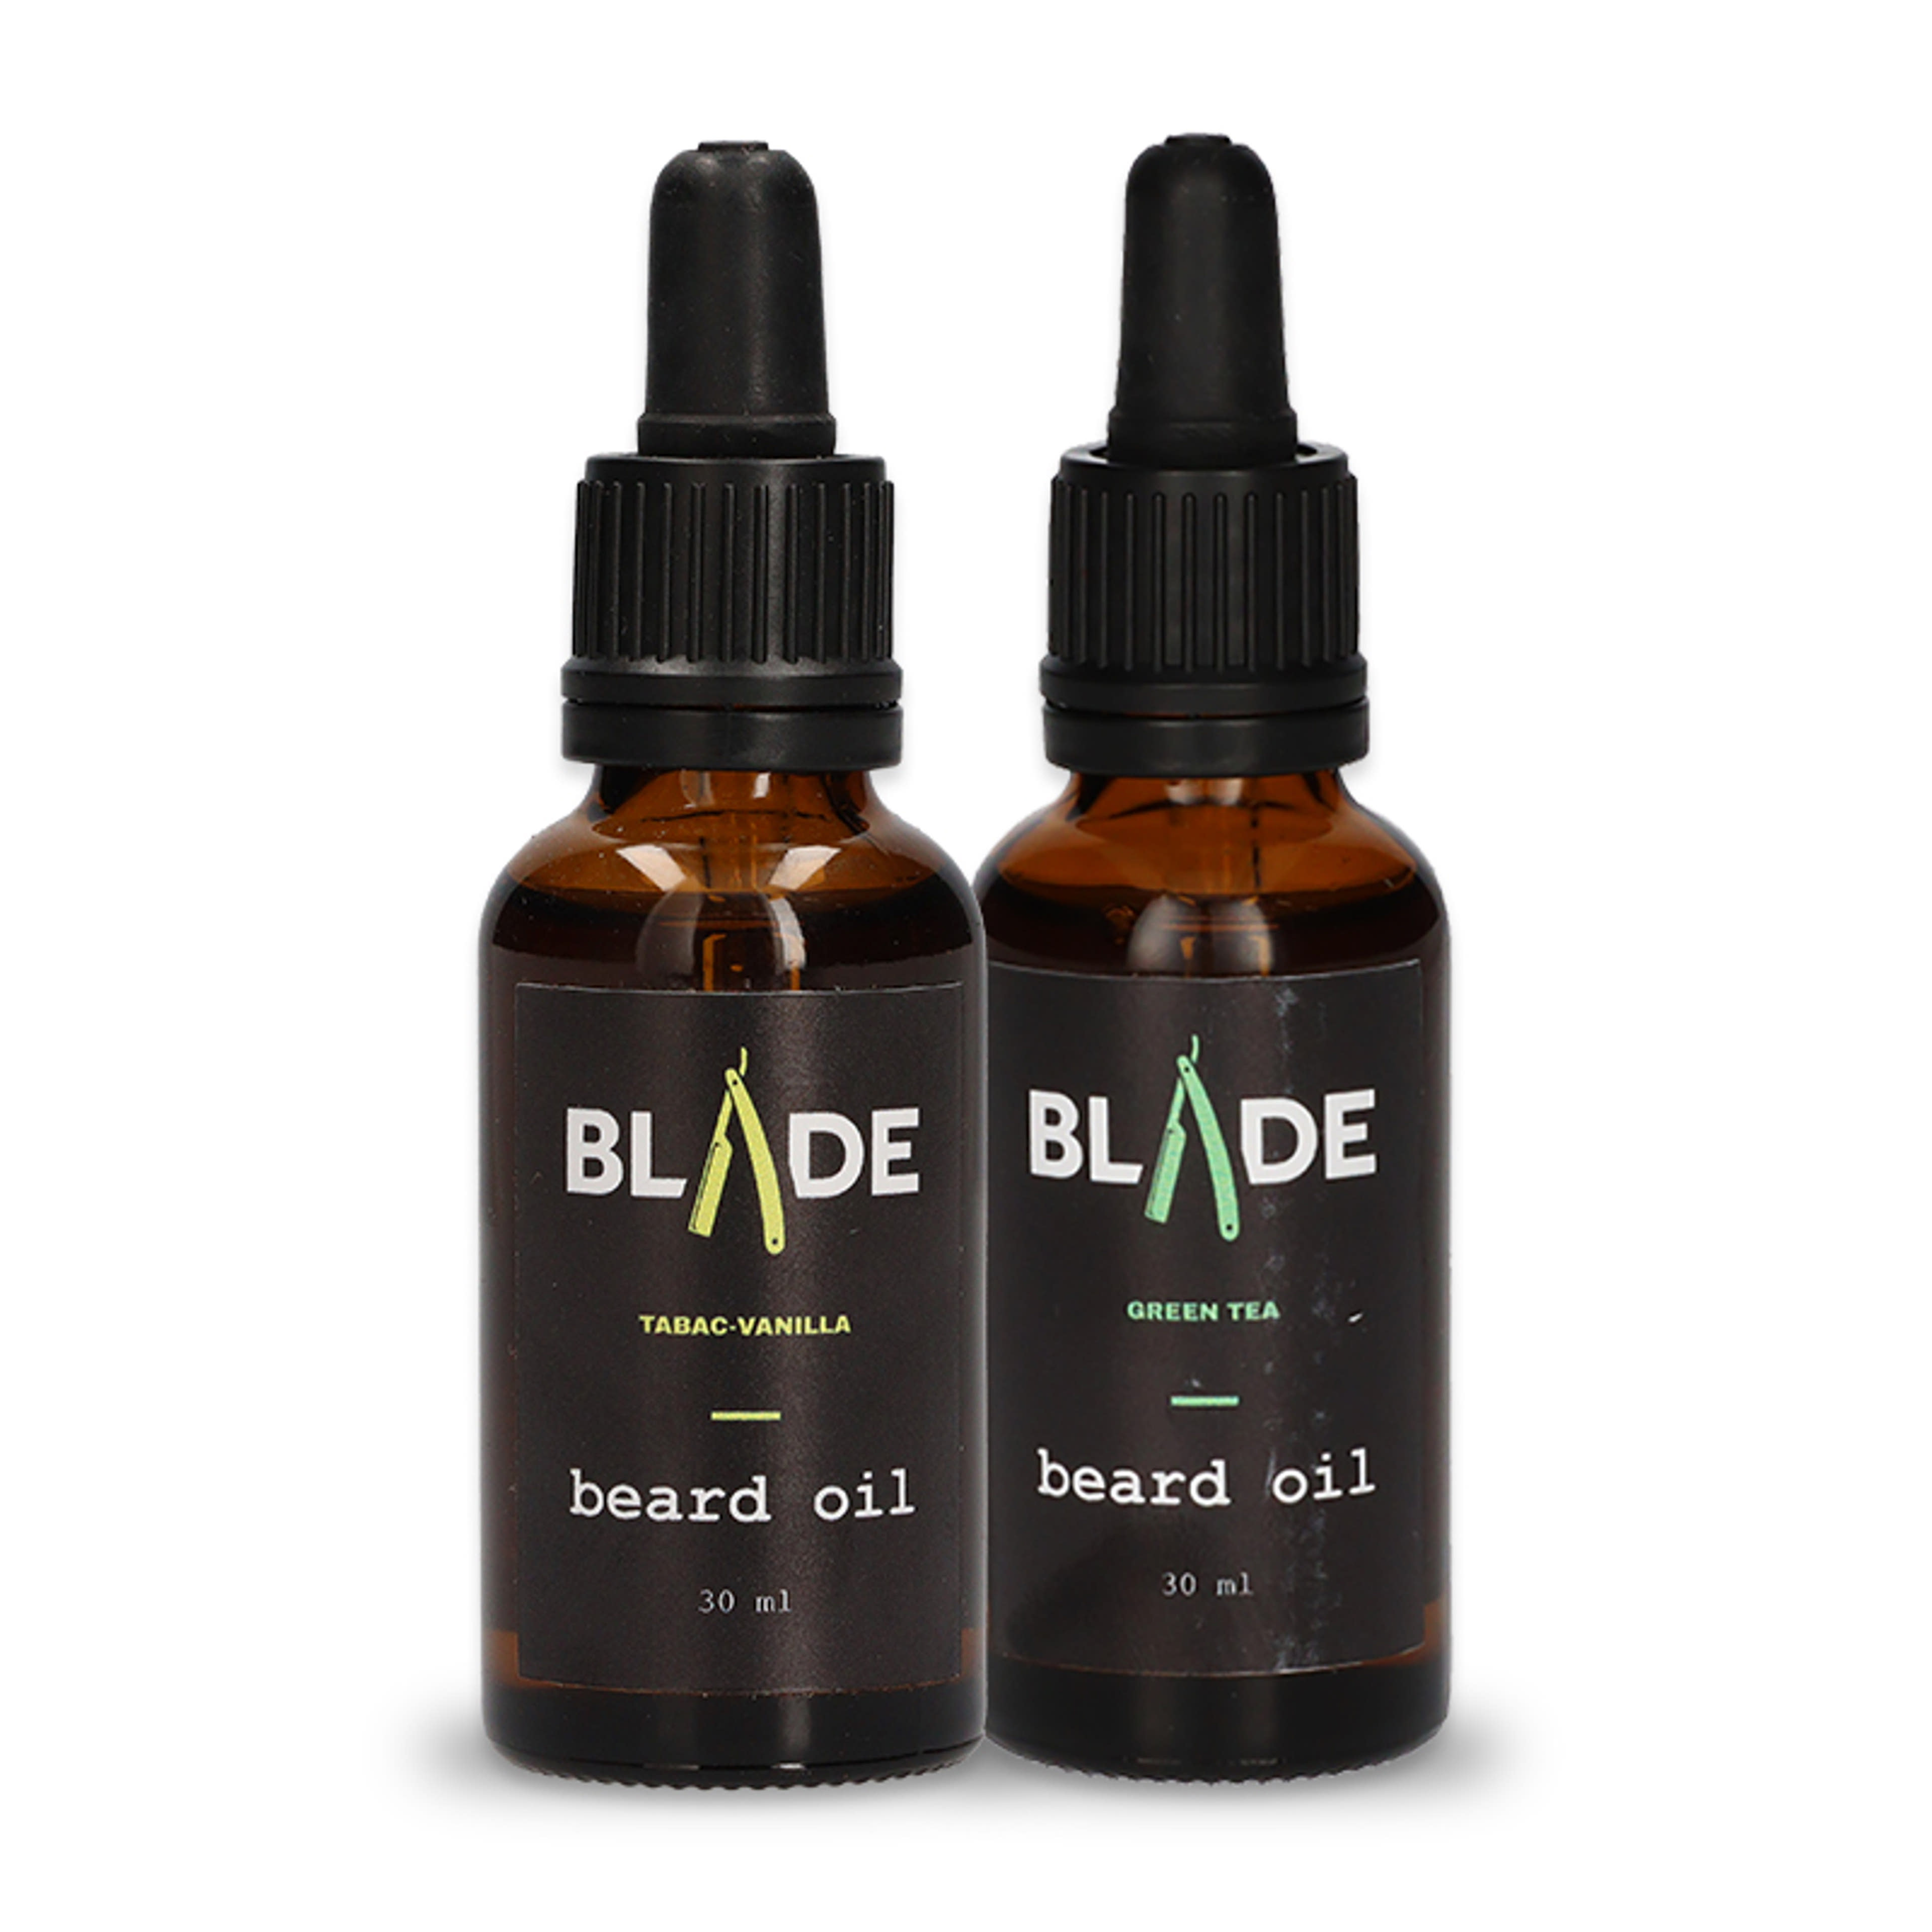 Blade szakállolaj csomag dohány-vanília és zöld tea illattal